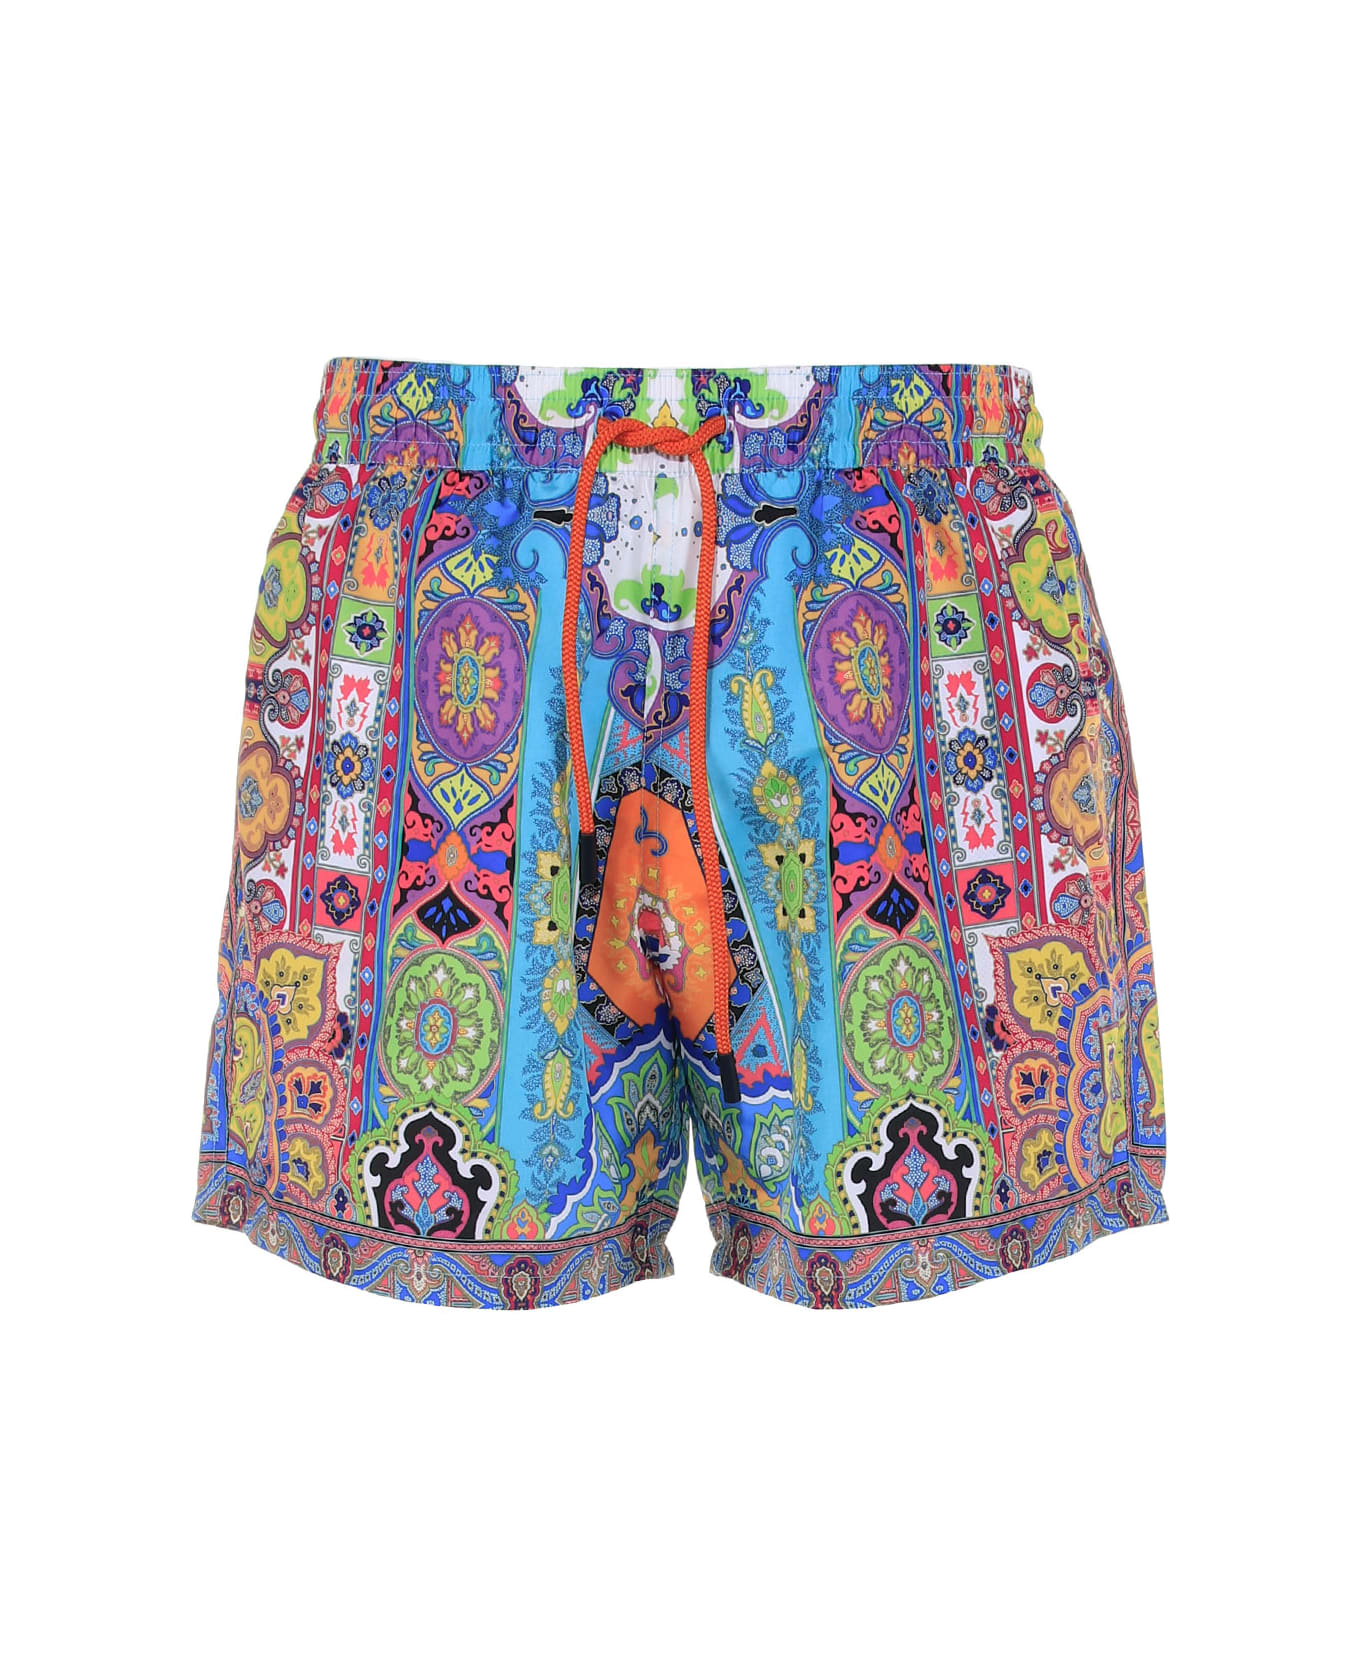 Etro Multicolored Swimsuit - FANTASIA